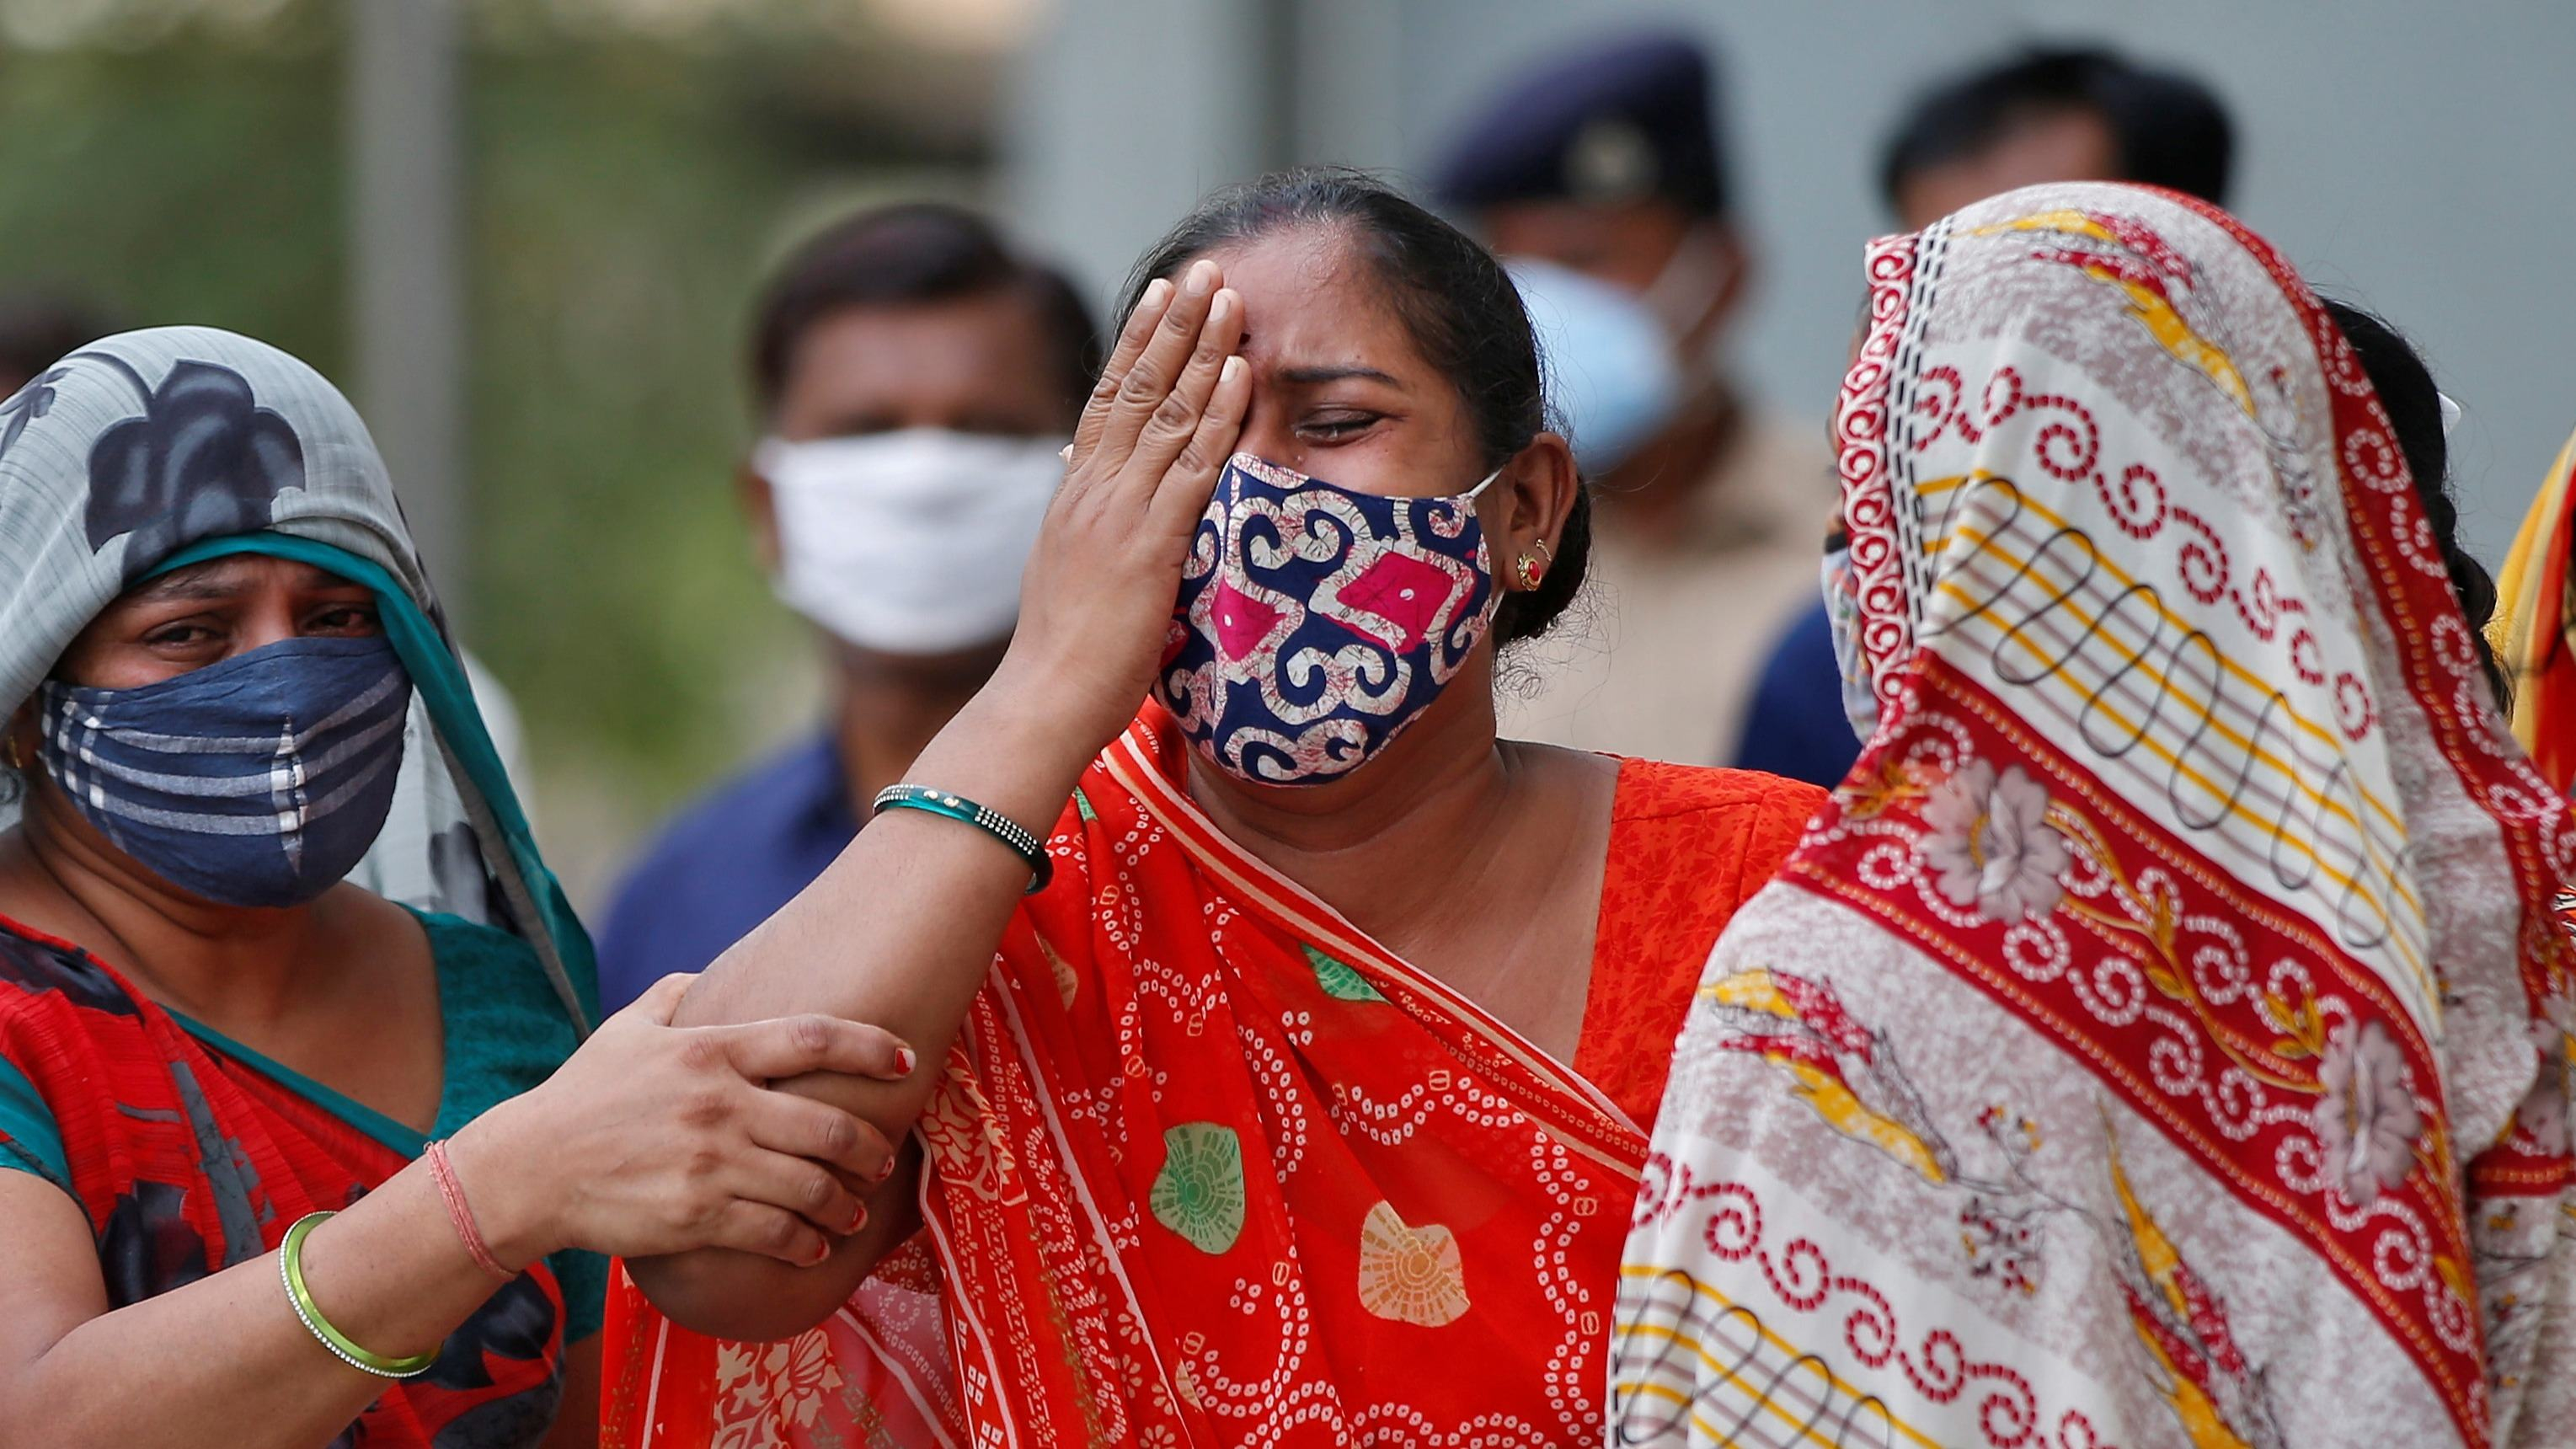  "Дельта плюс": в Индии циркулирует новый вид штамма коронавируса